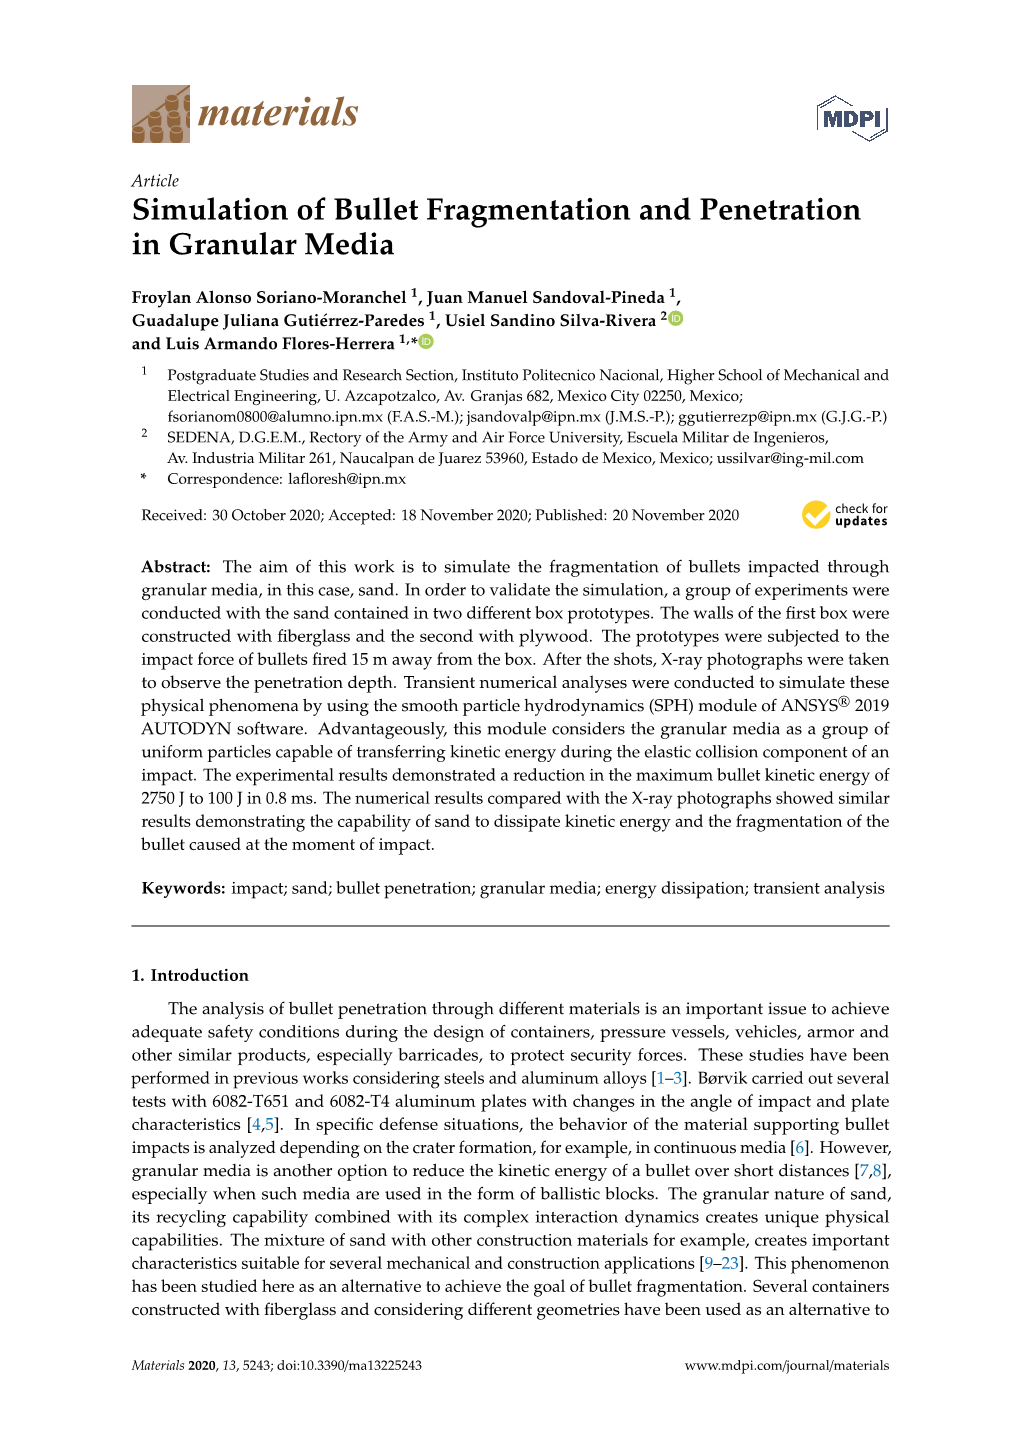 Simulation of Bullet Fragmentation and Penetration in Granular Media